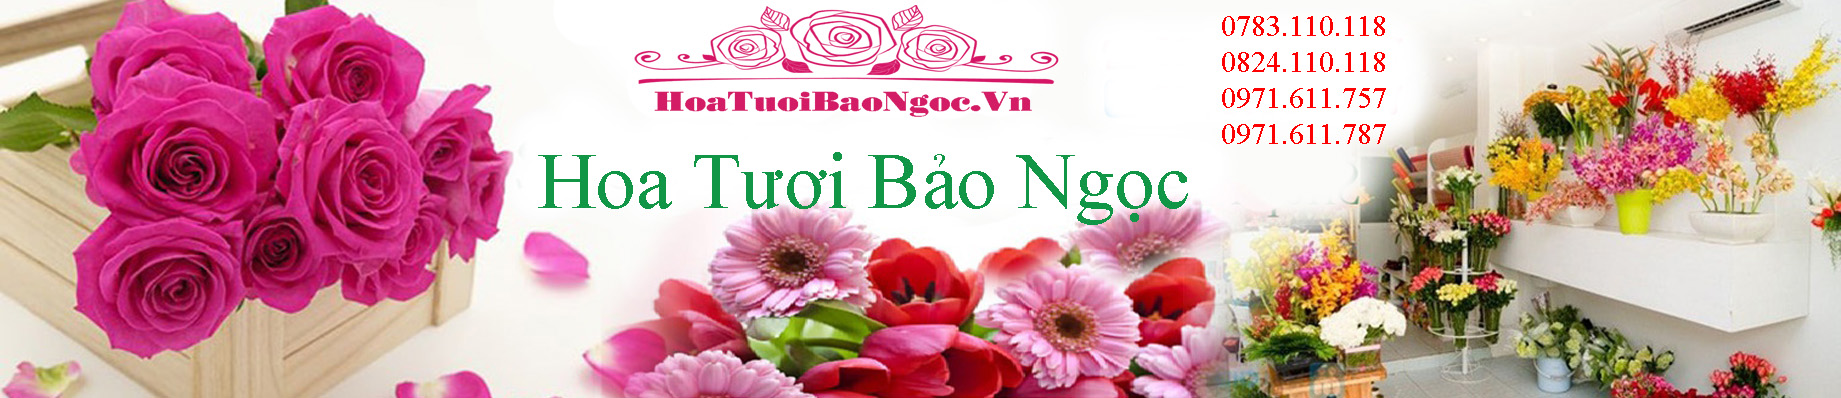 Hoa tươi thành phố Thuận An